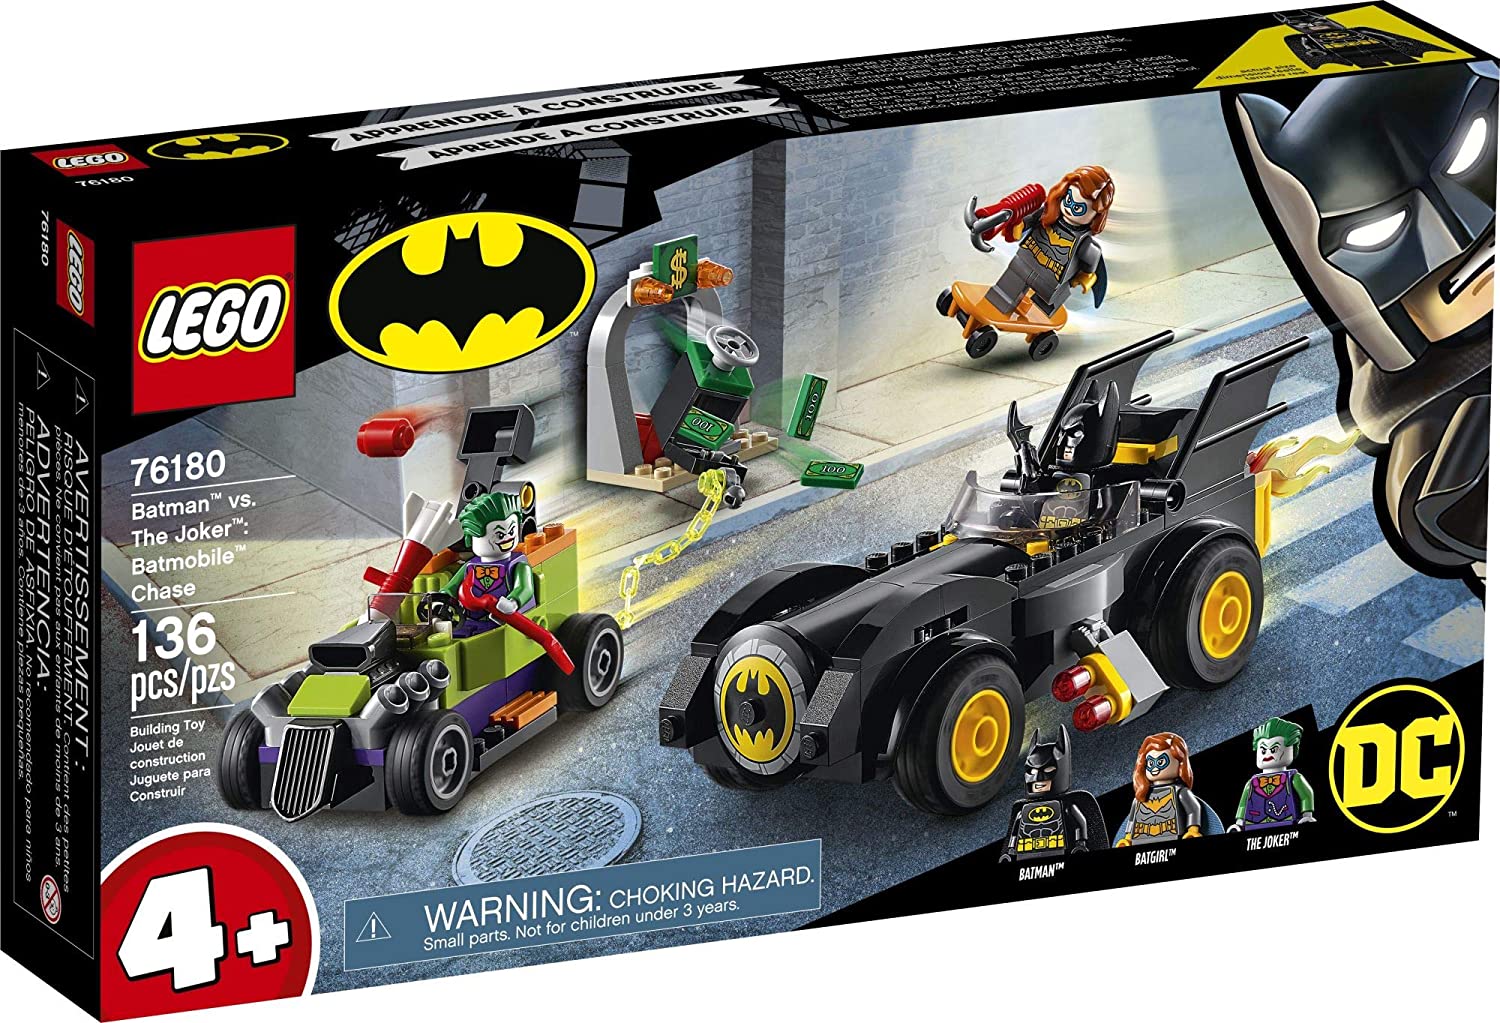 The New Lego DC Batman: Batman vs. Joker: Batmobile Chase 76180 Đồ chơi  khối xây dựng có thể sưu tập được; bao gồm Batman, Batgirl và Joker  minifigure, cũng như batmobiles và